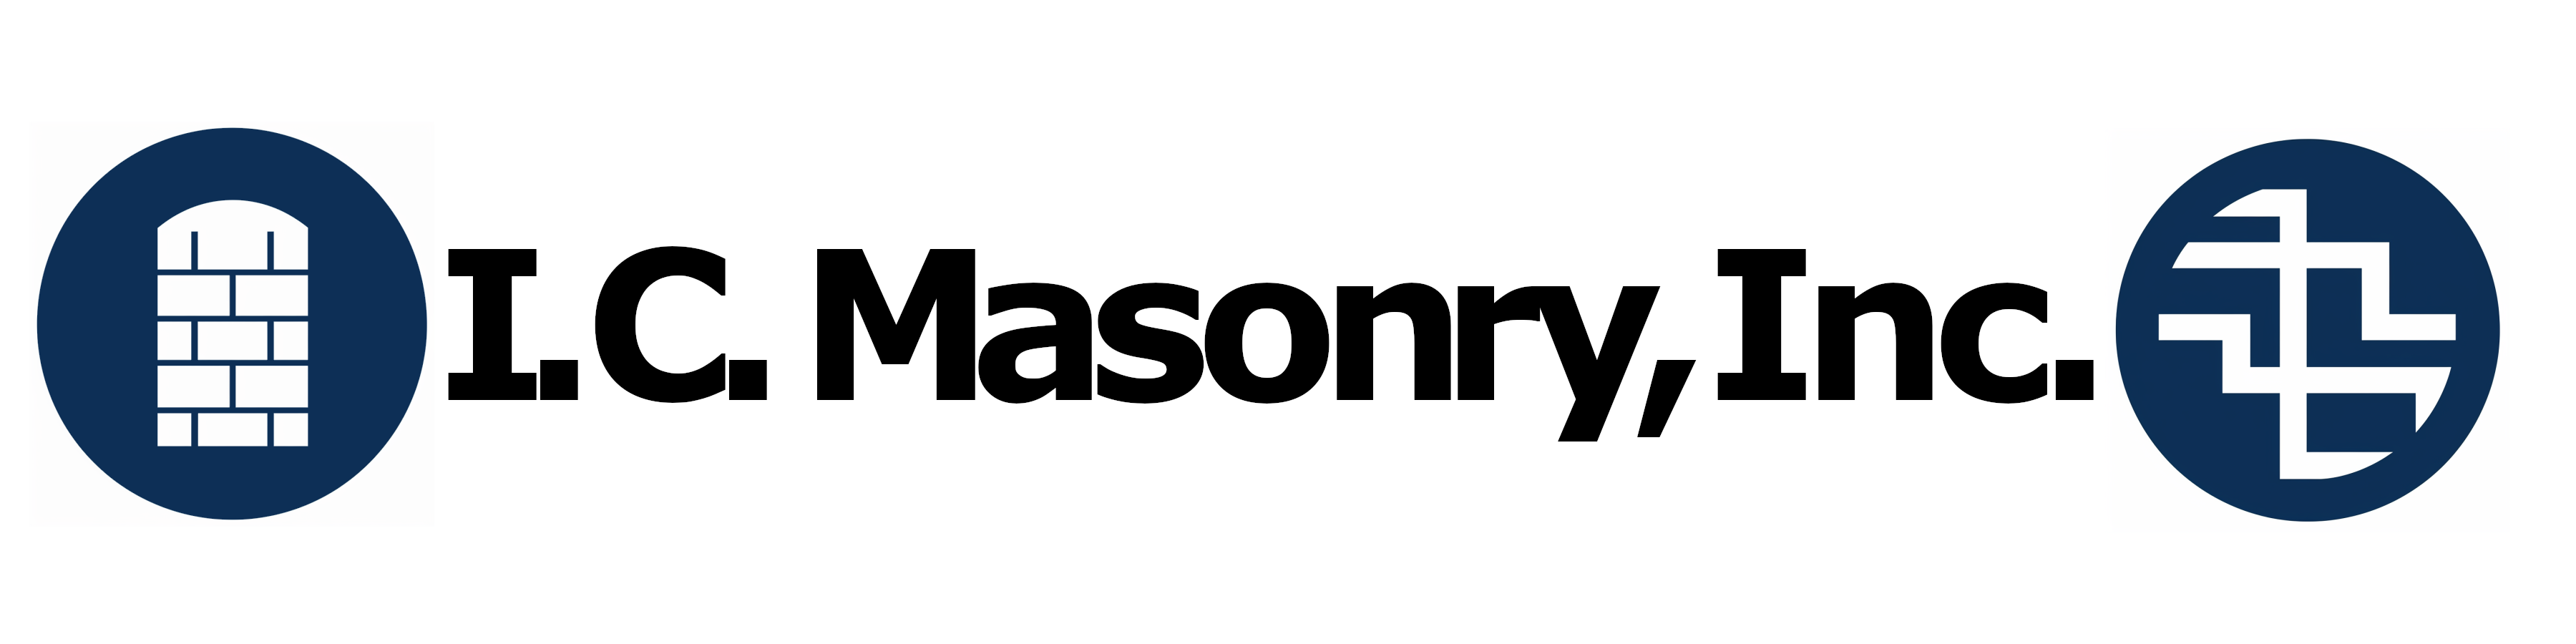 I.C. Masonry, Inc. Logo